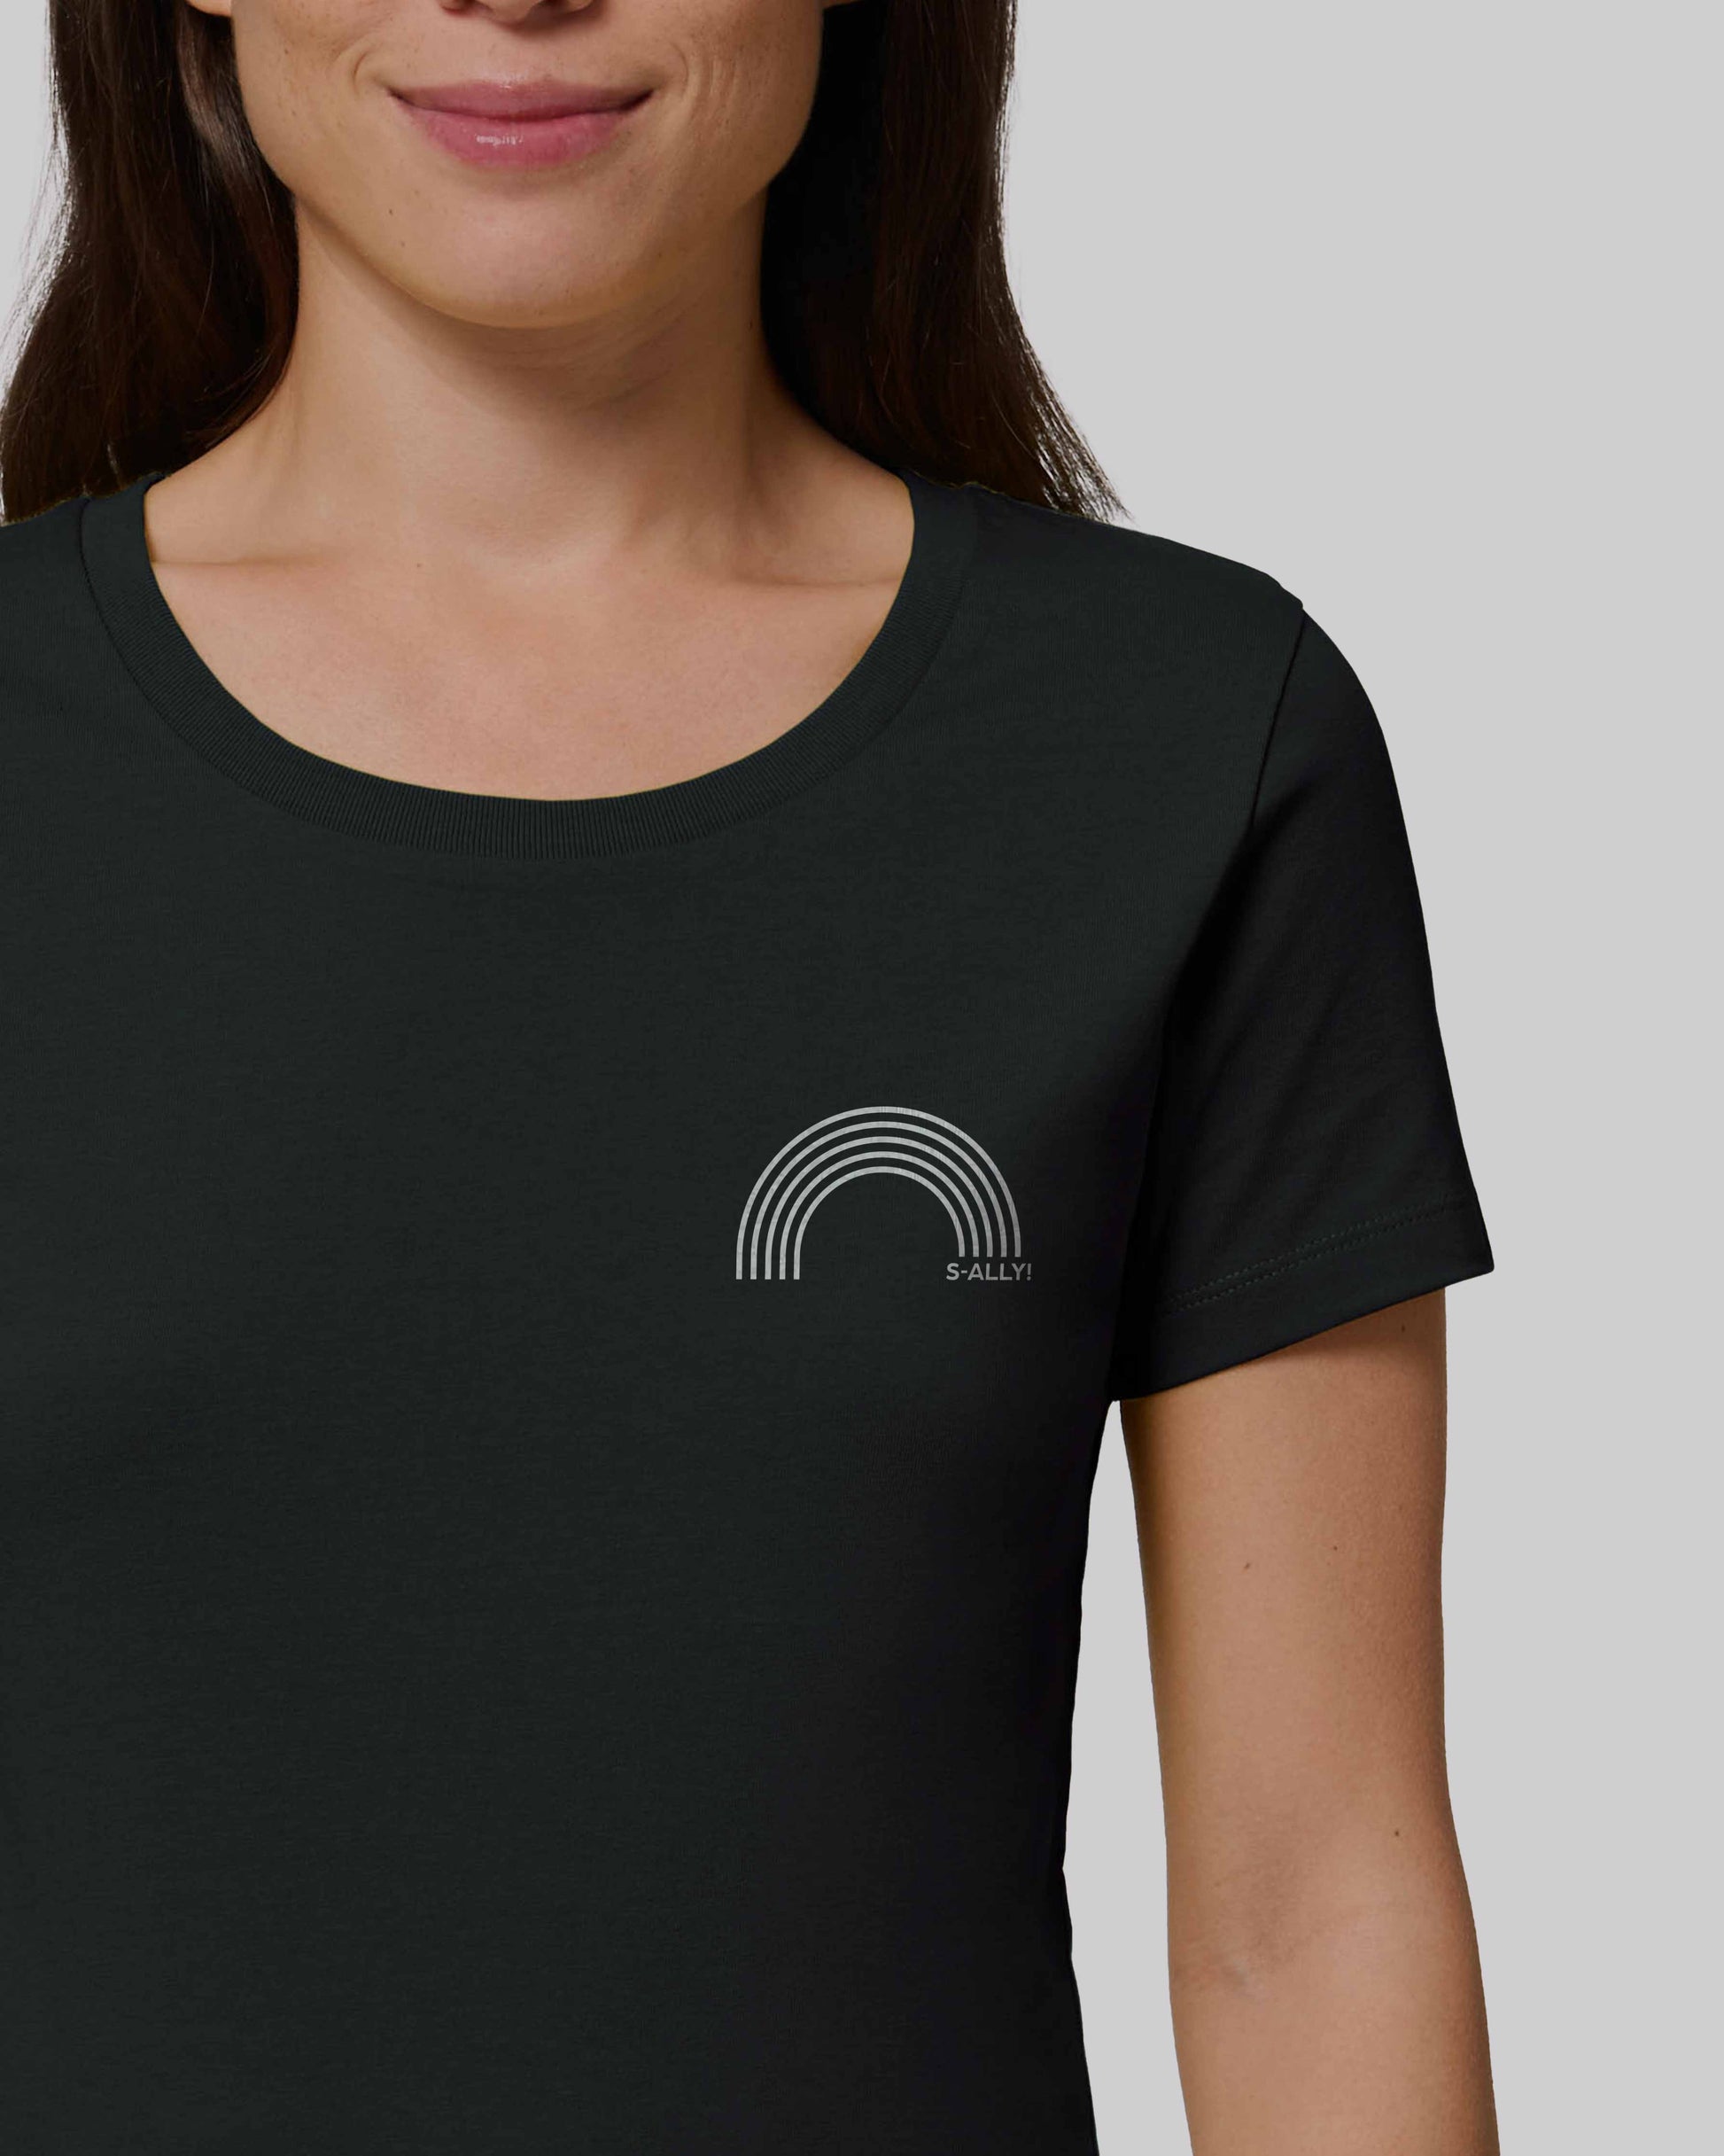 EINHORST® Organic Shirt tailliert in "Schwarz" mit dem Motiv "s-ally Regenbogen" in der Kombination weißer Regenbogen mit weißer Schrift, Bild von weiblicher Person mit Shirt